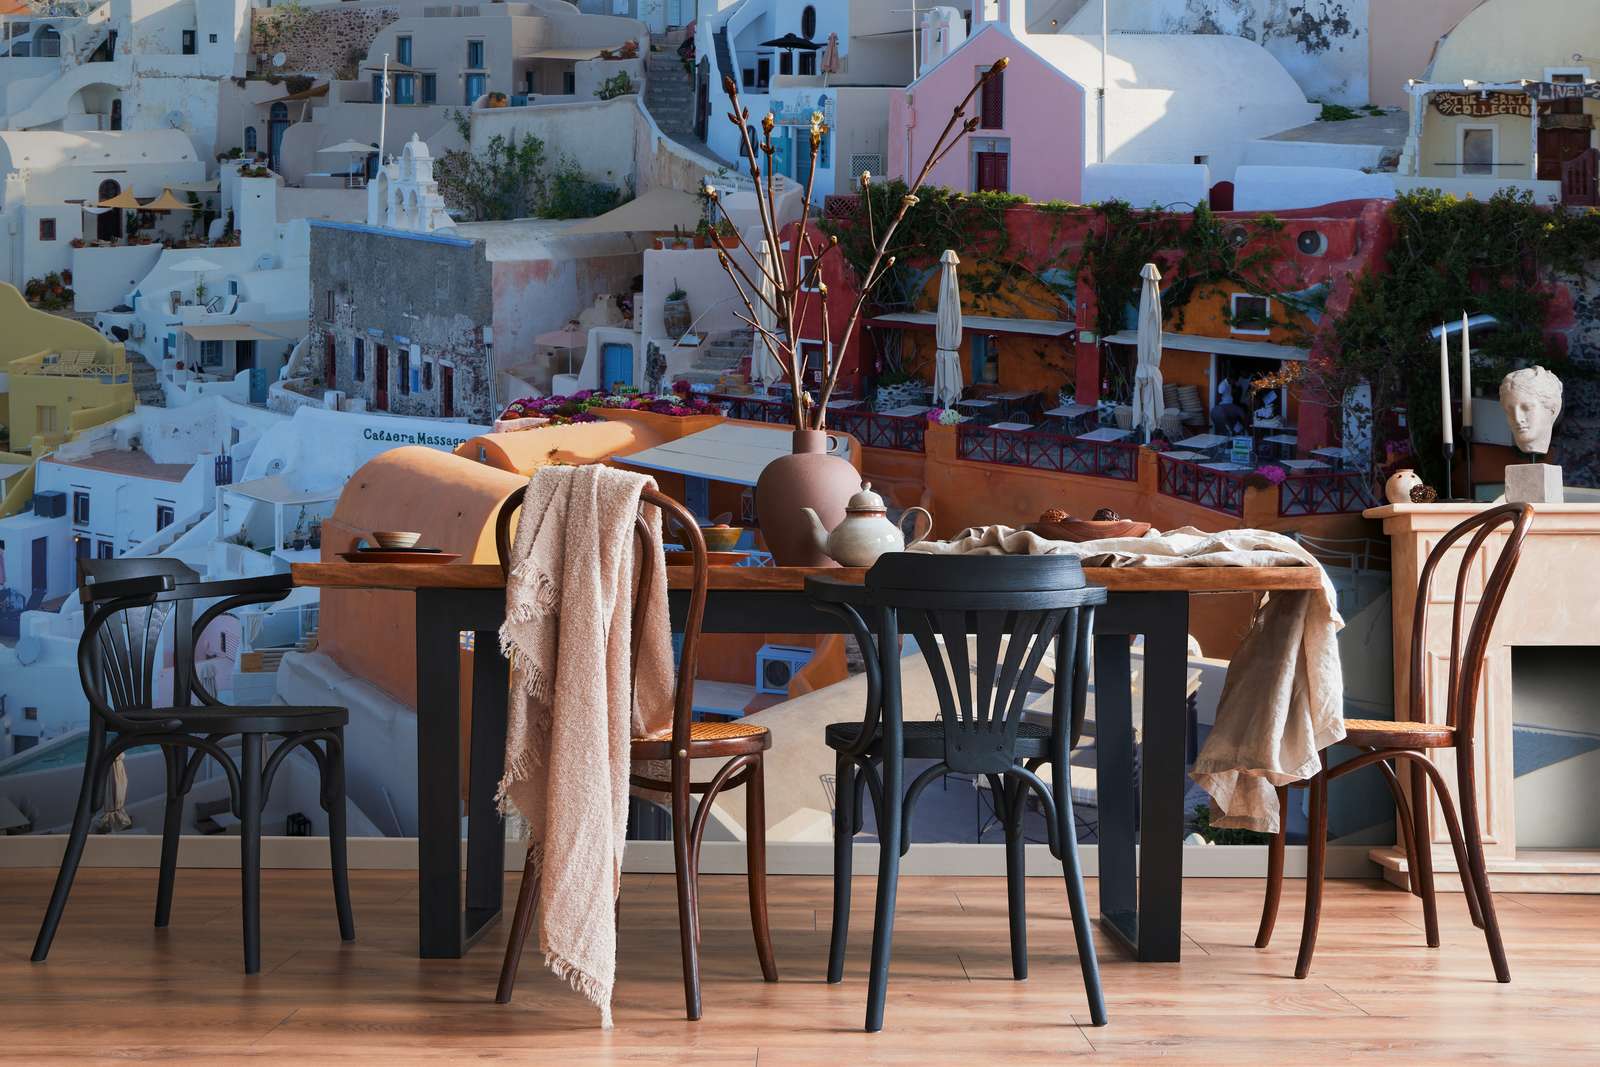             Fotomural Casas de Santorini - Vellón liso de primera calidad
        